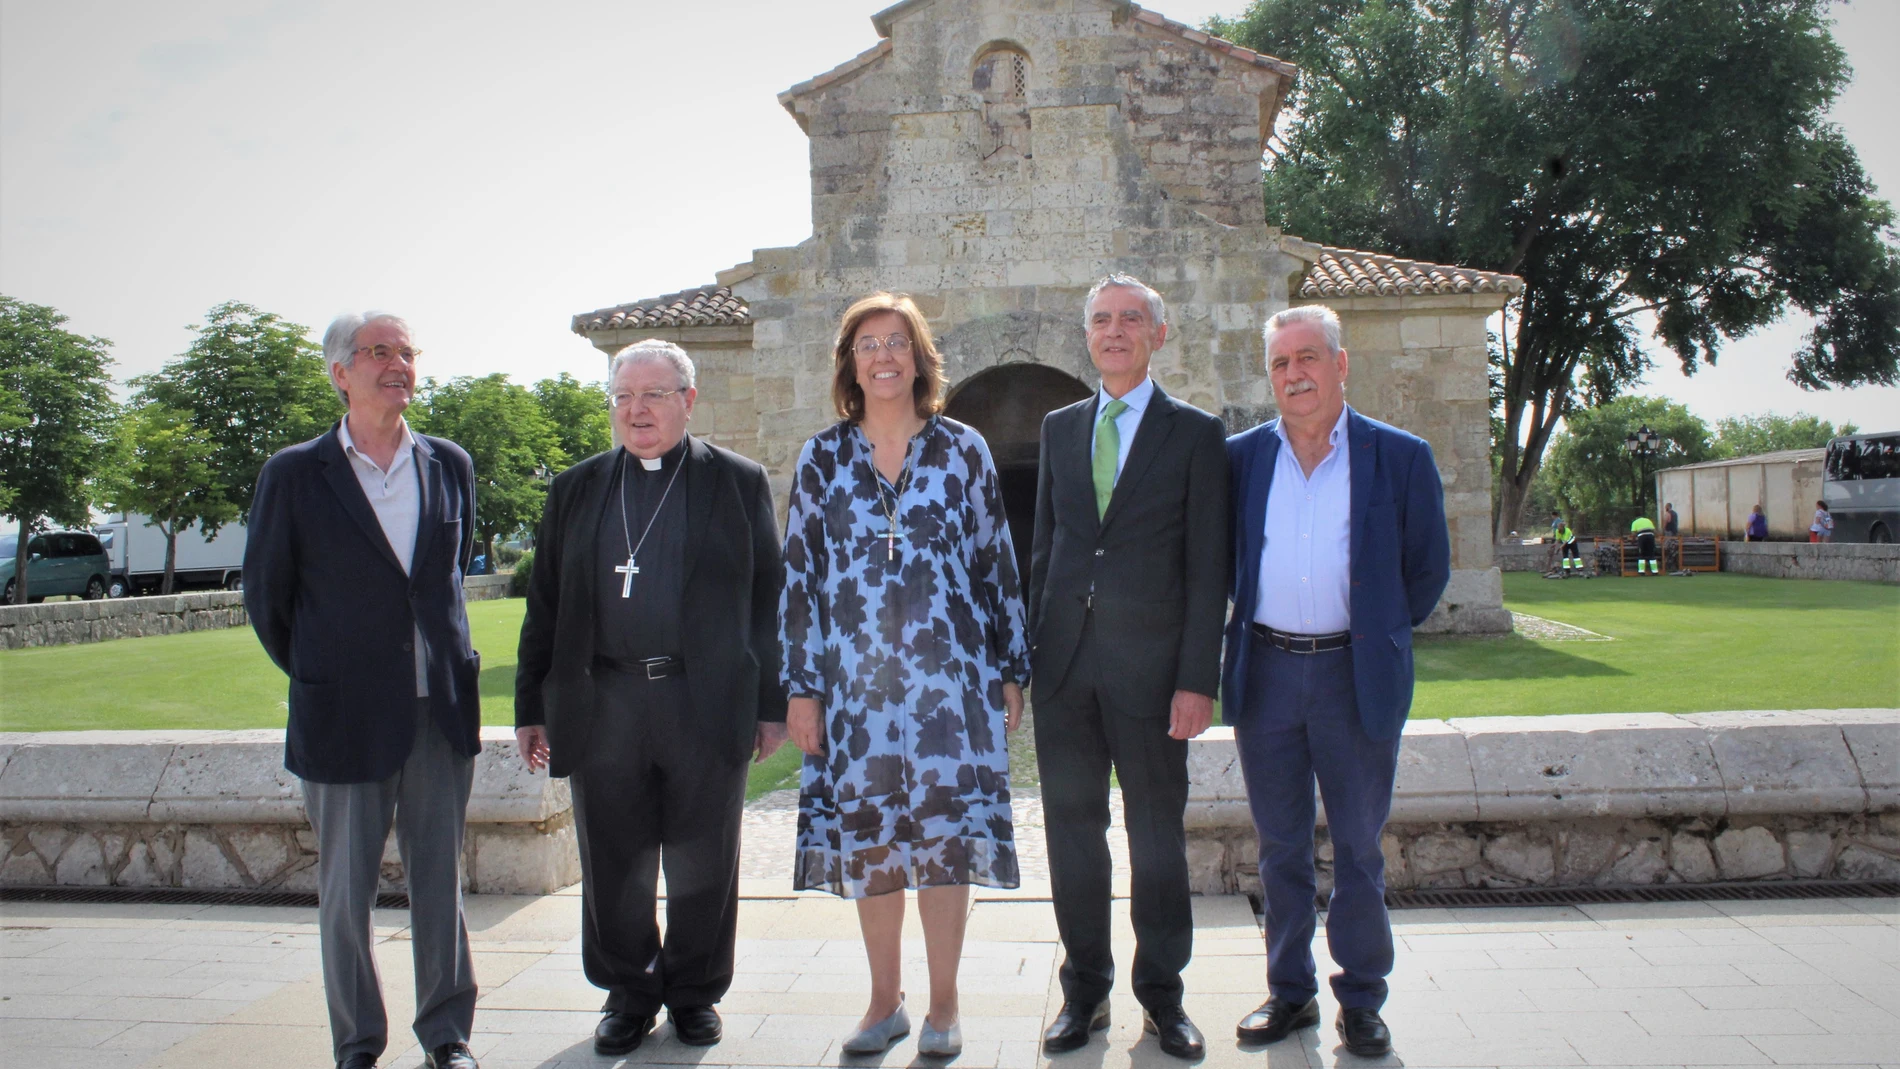 Convenio entre Iberdrola y la Diócesis de Palencia para iluminar la iglesia de San Juan de Baños